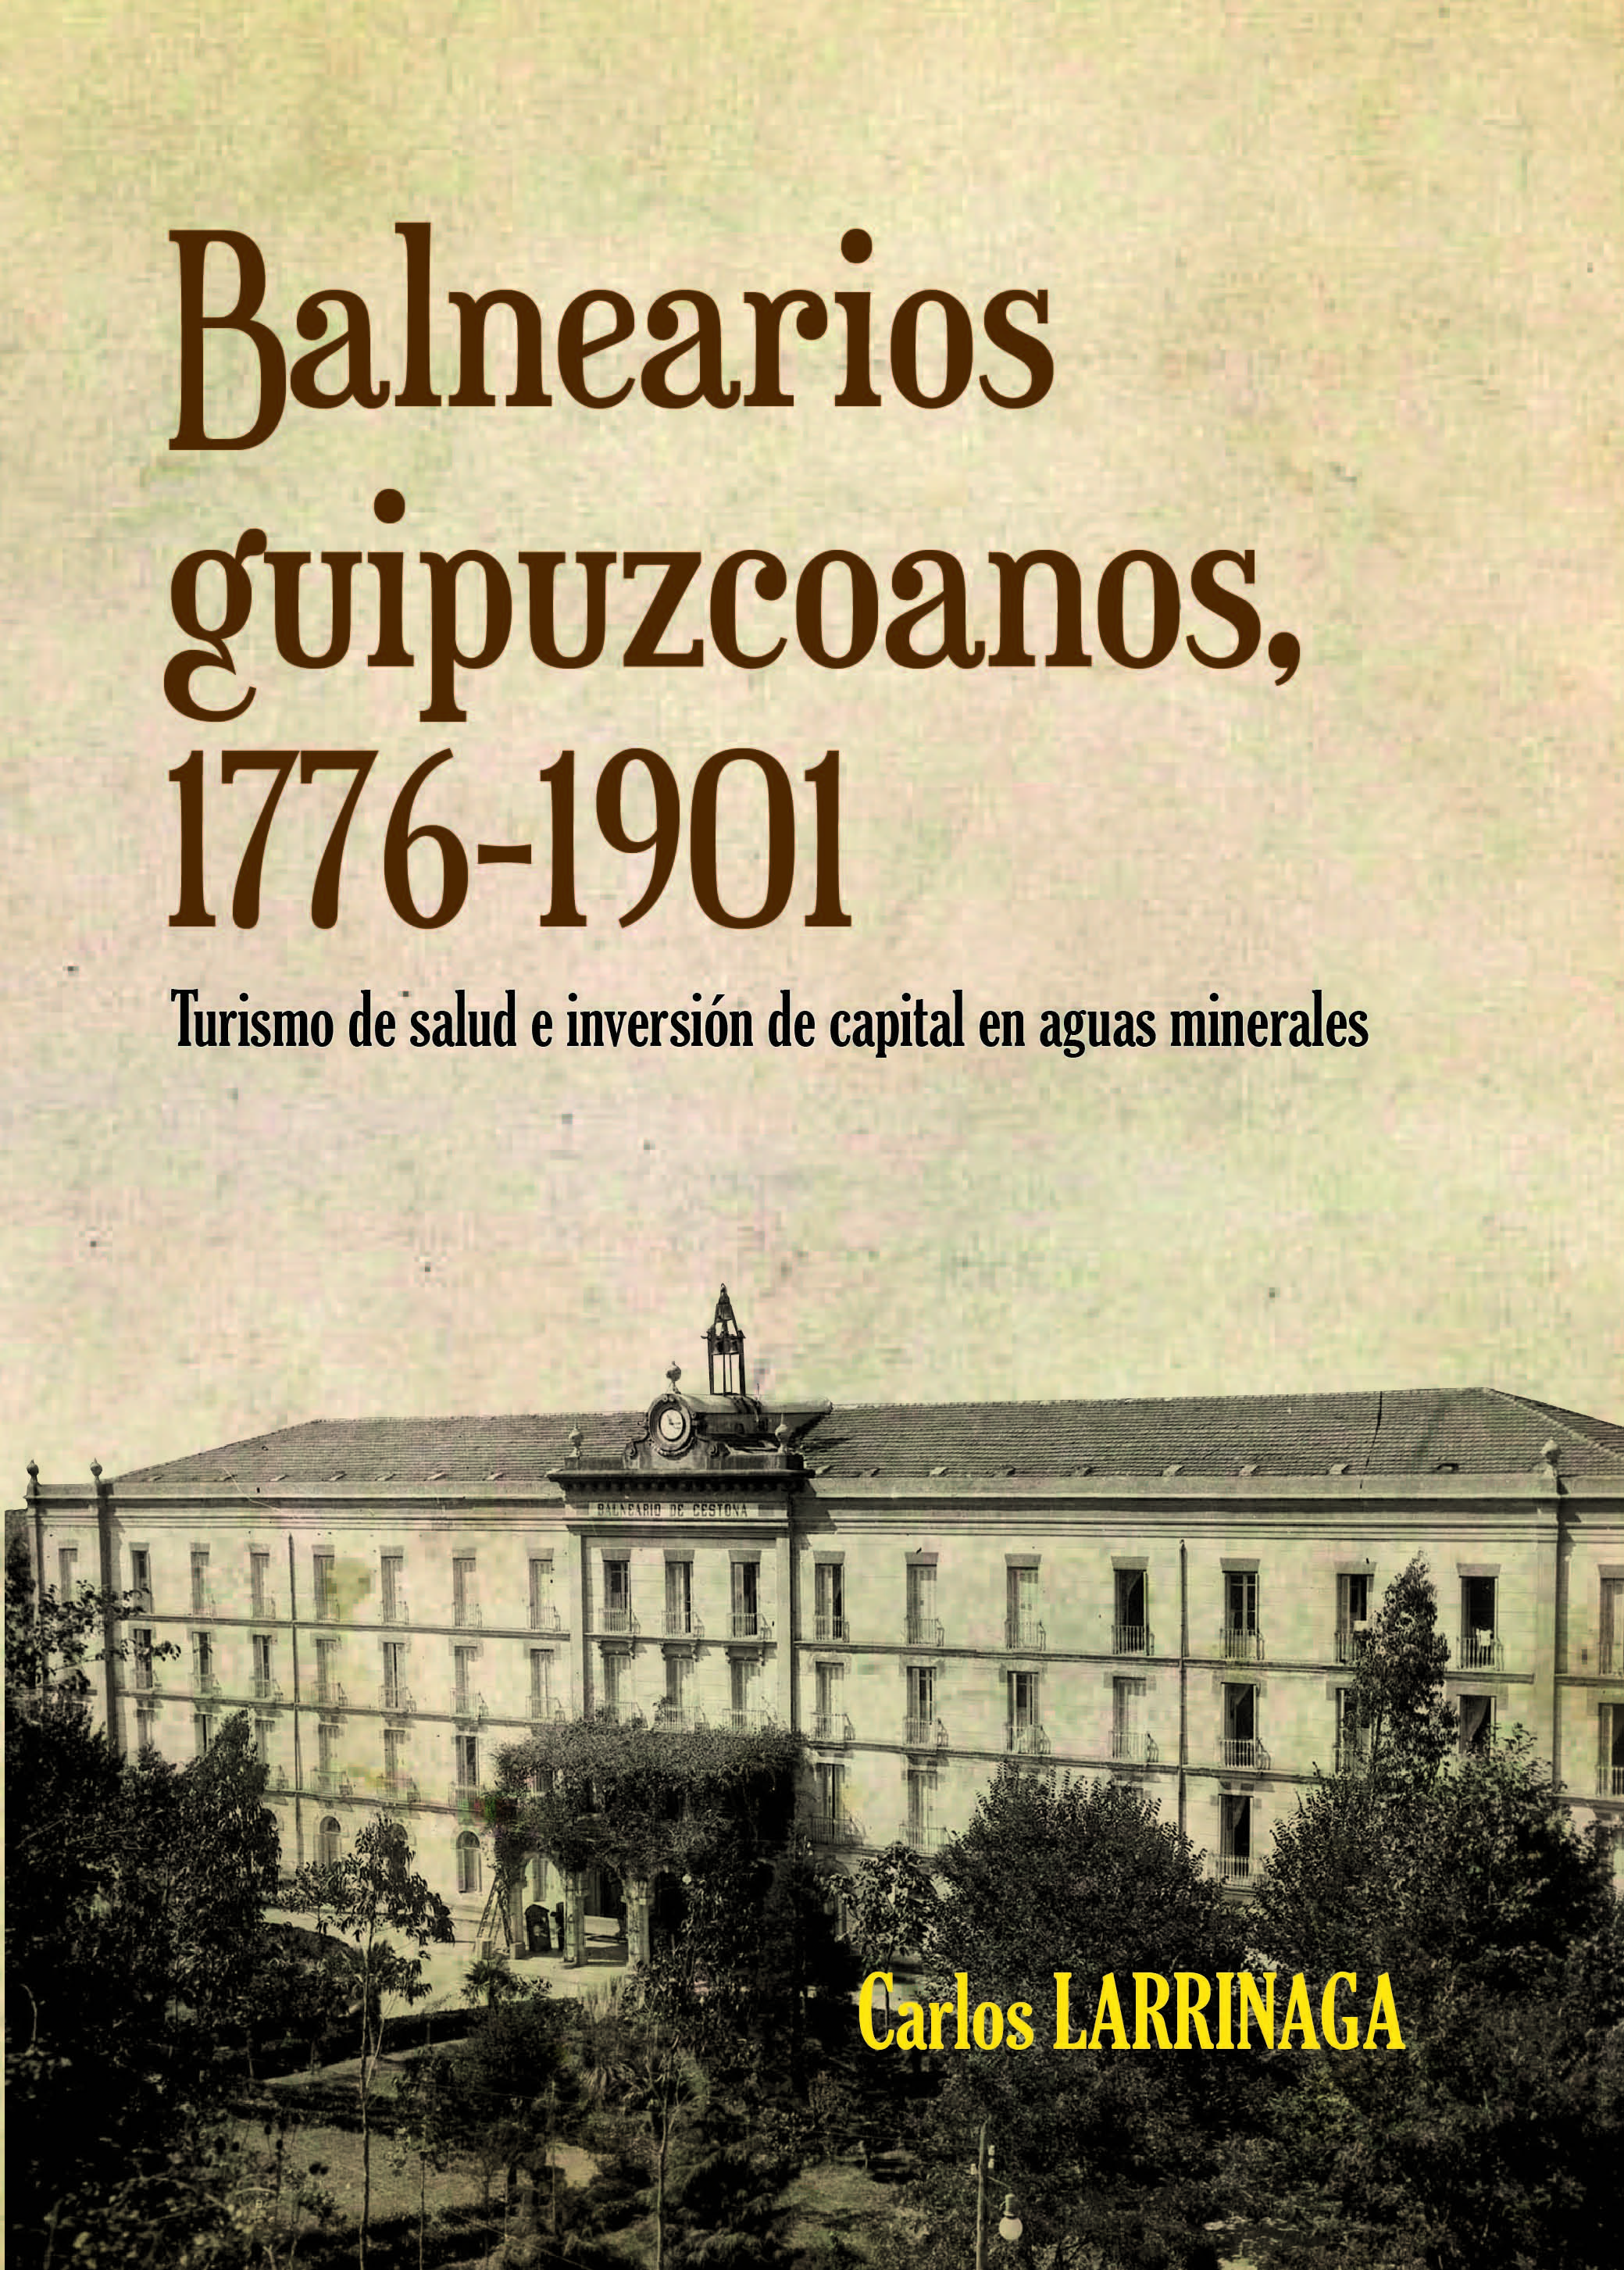 Portada del libro "Balnearios Guipuzcoanos 1776-1901" (2014)